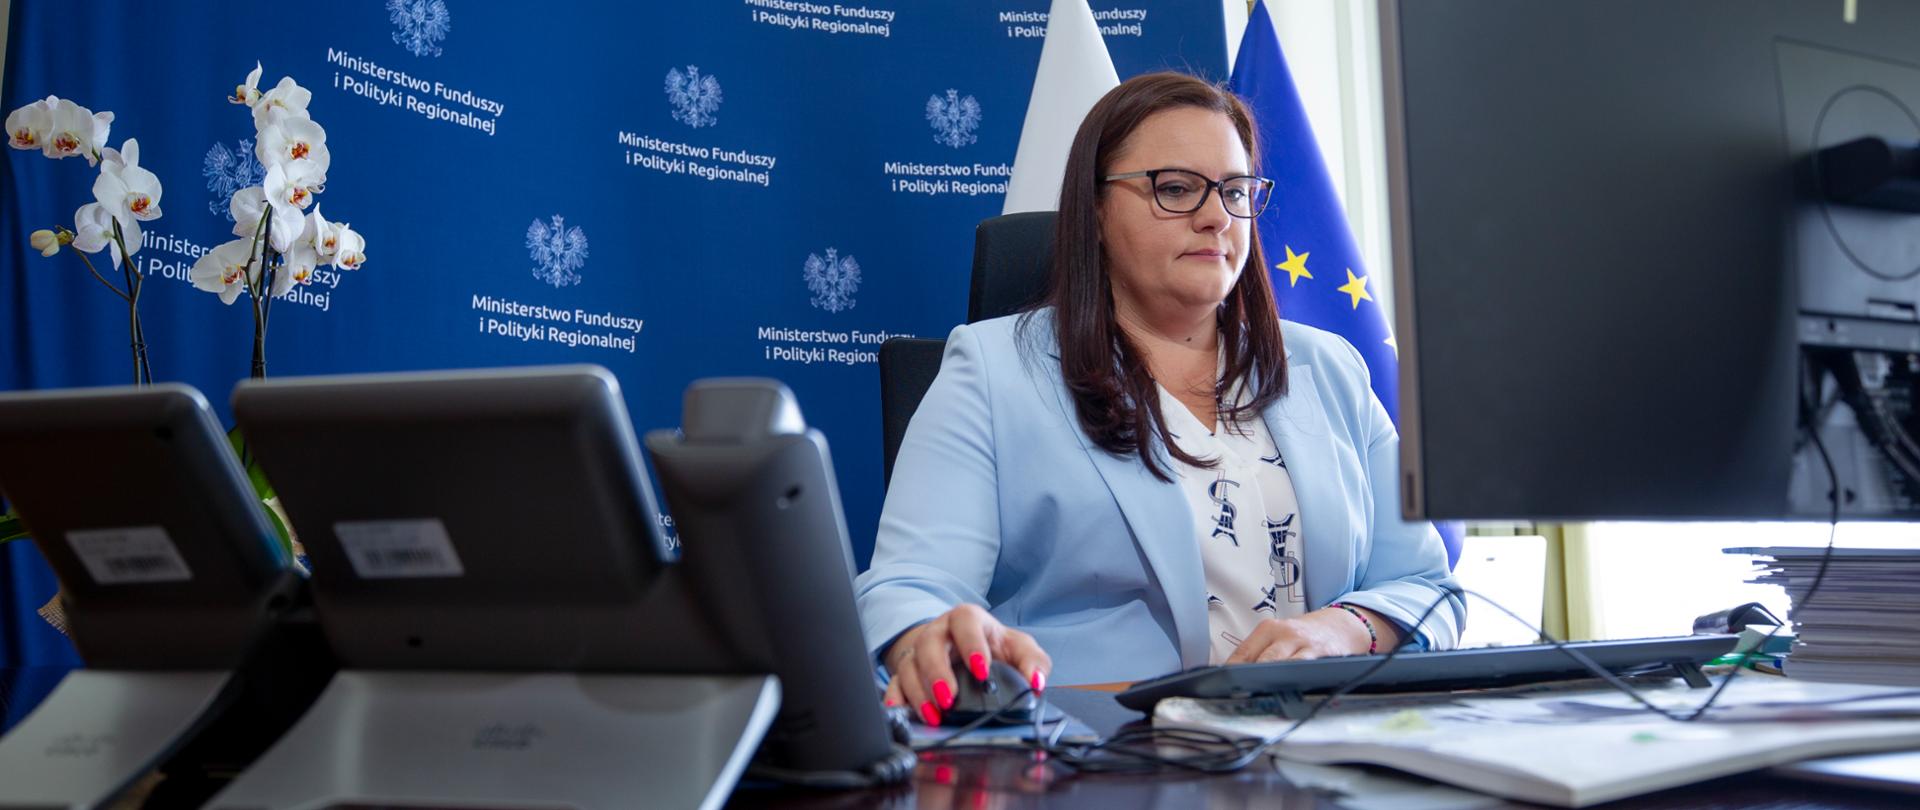 W gabinecie przy biurku z monitorem siedzi wiceminister Małgorzata Jarosińska-Jedynak. Za nią ścianka konferencyjna z logo Ministerstwa Funduszy i Polityki Regionalnej.